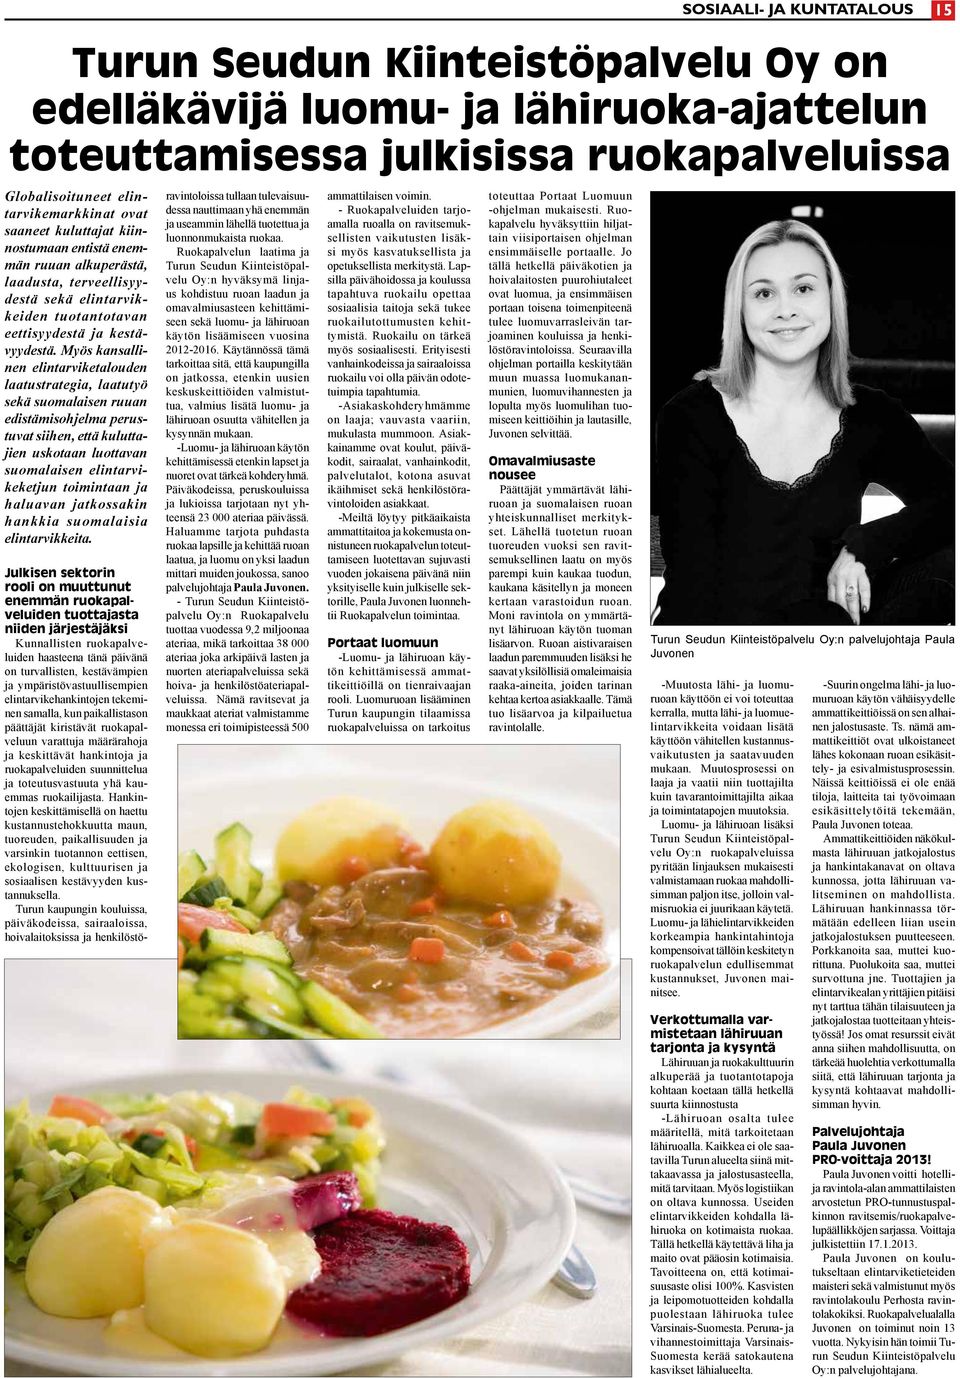 yös kansallinen elintarviketalouden laatustrategia, laatutyö sekä suomalaisen ruuan edistämisohjelma perustuvat siihen, että kuluttajien uskotaan luottavan suomalaisen elintarvikeketjun toimintaan ja